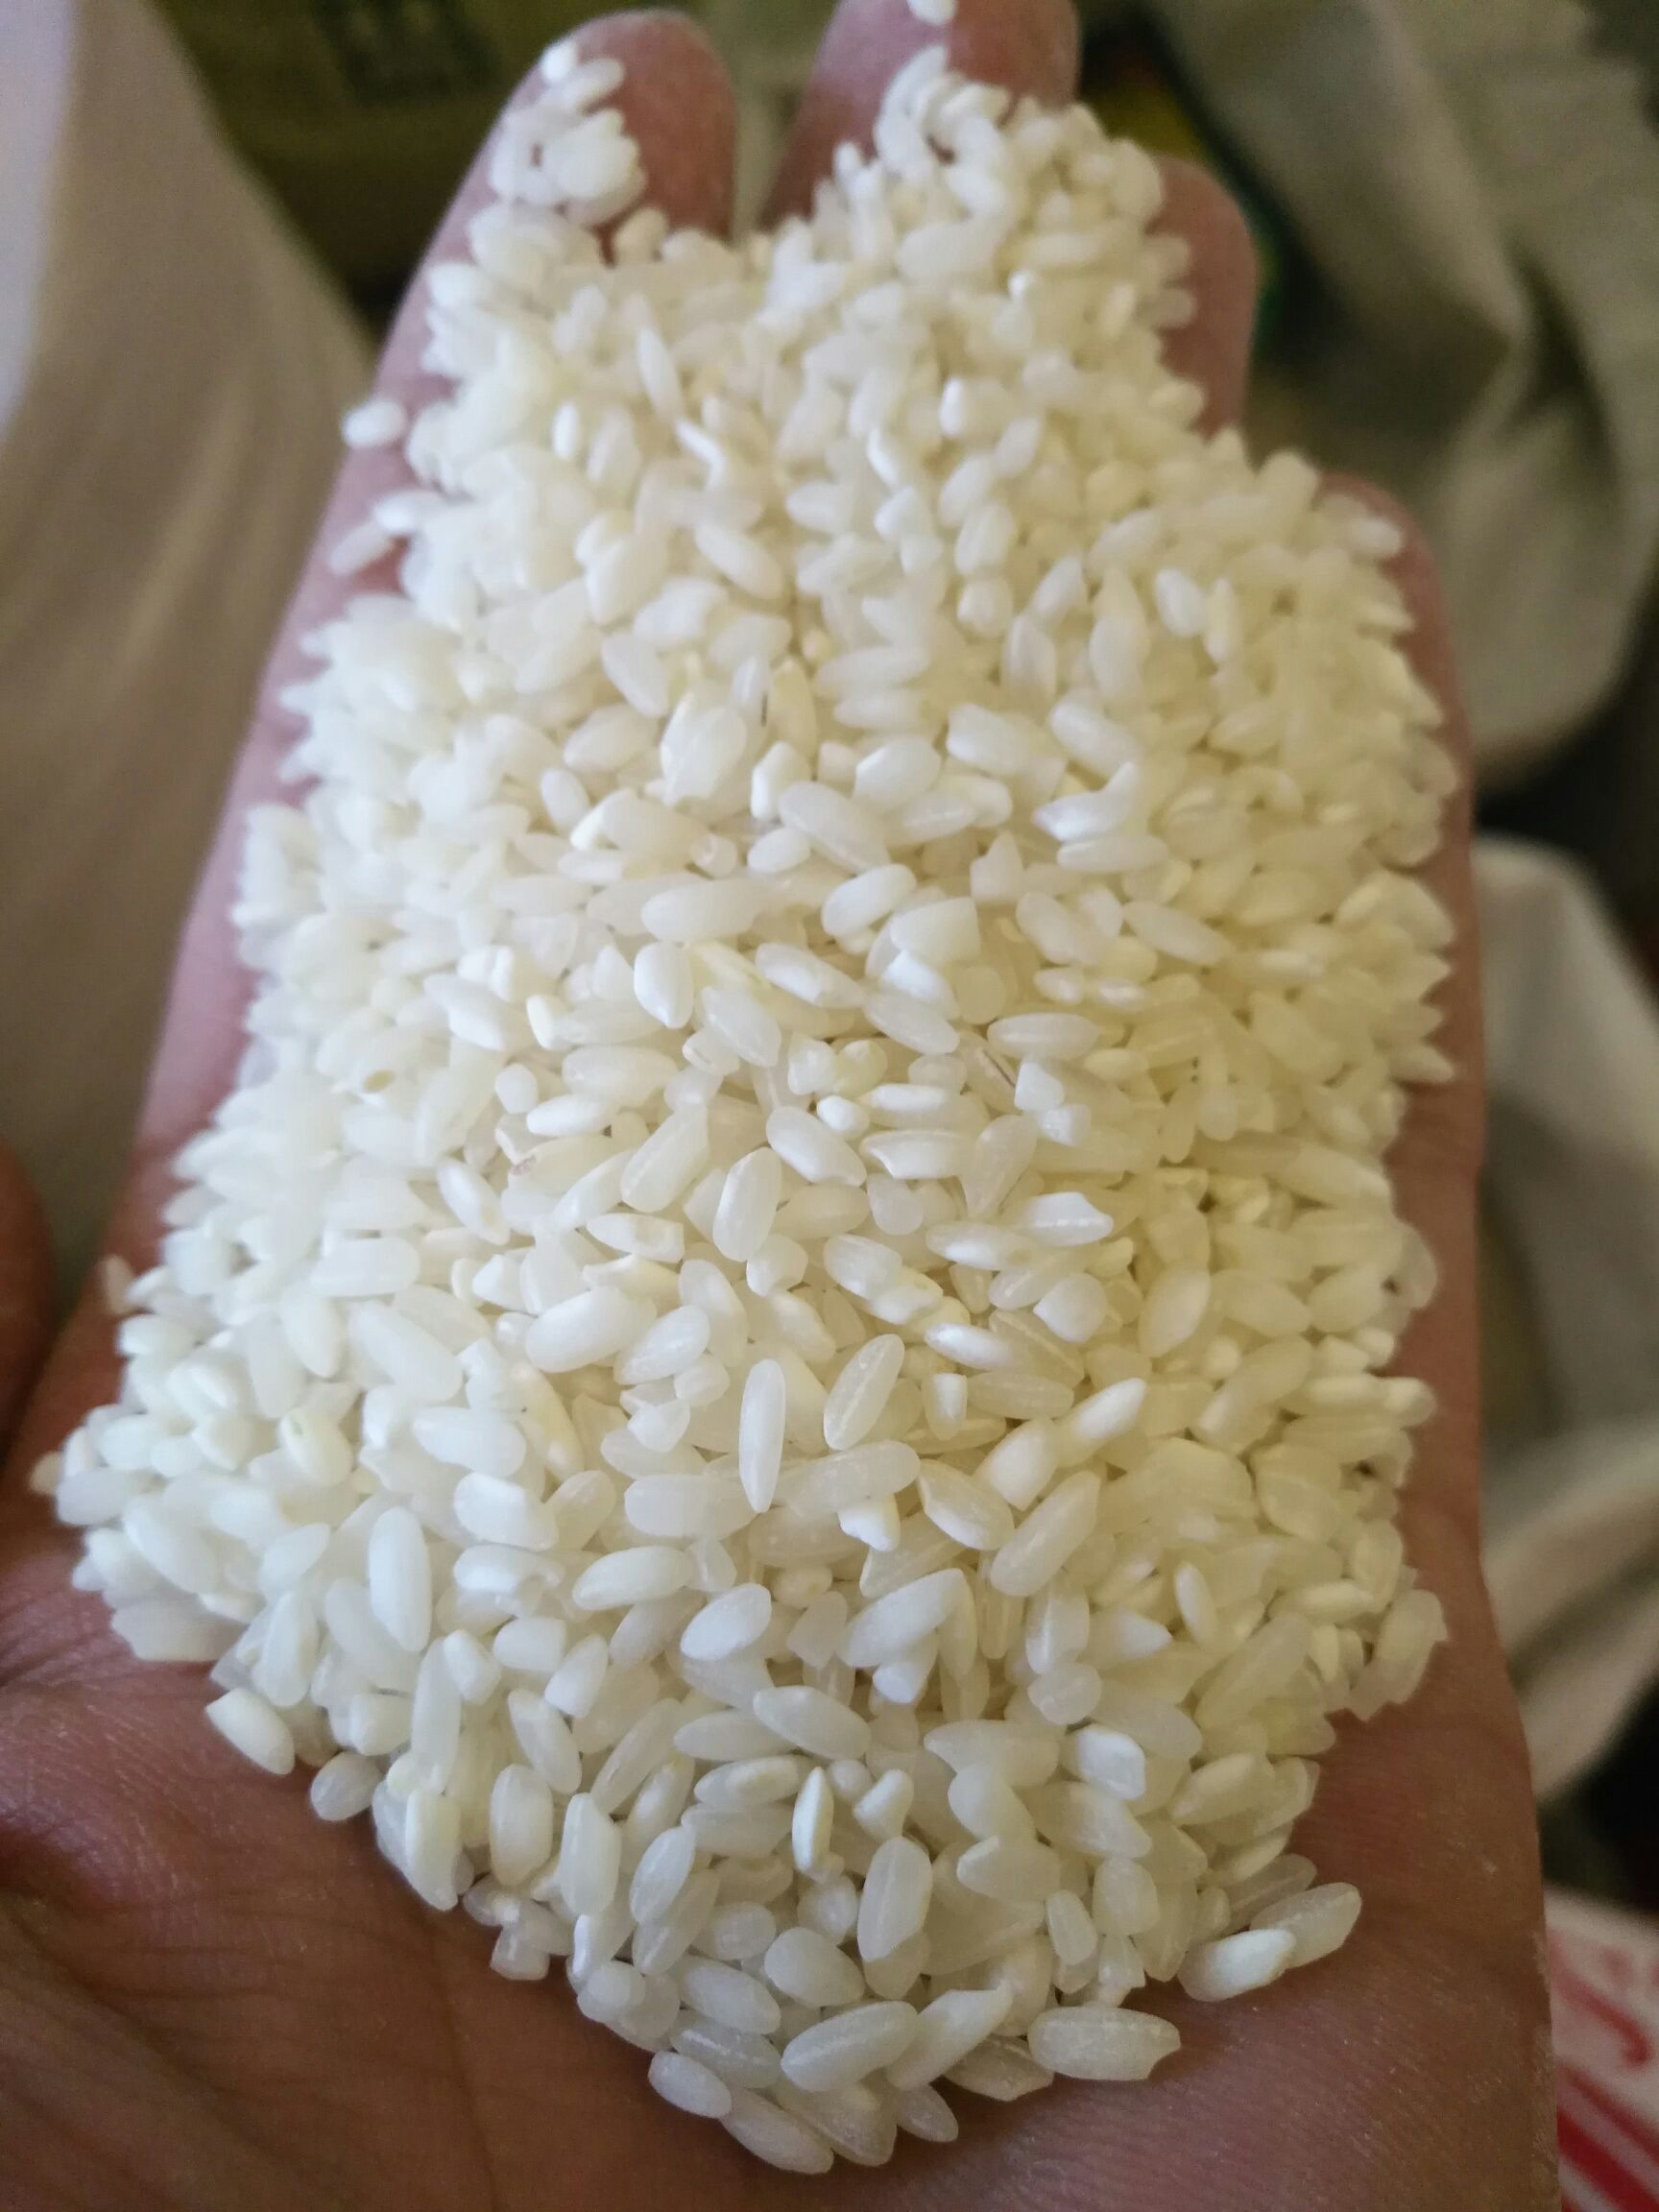 [大米批发]桂朝大米 桂朝米贵潮米价格22元/斤 